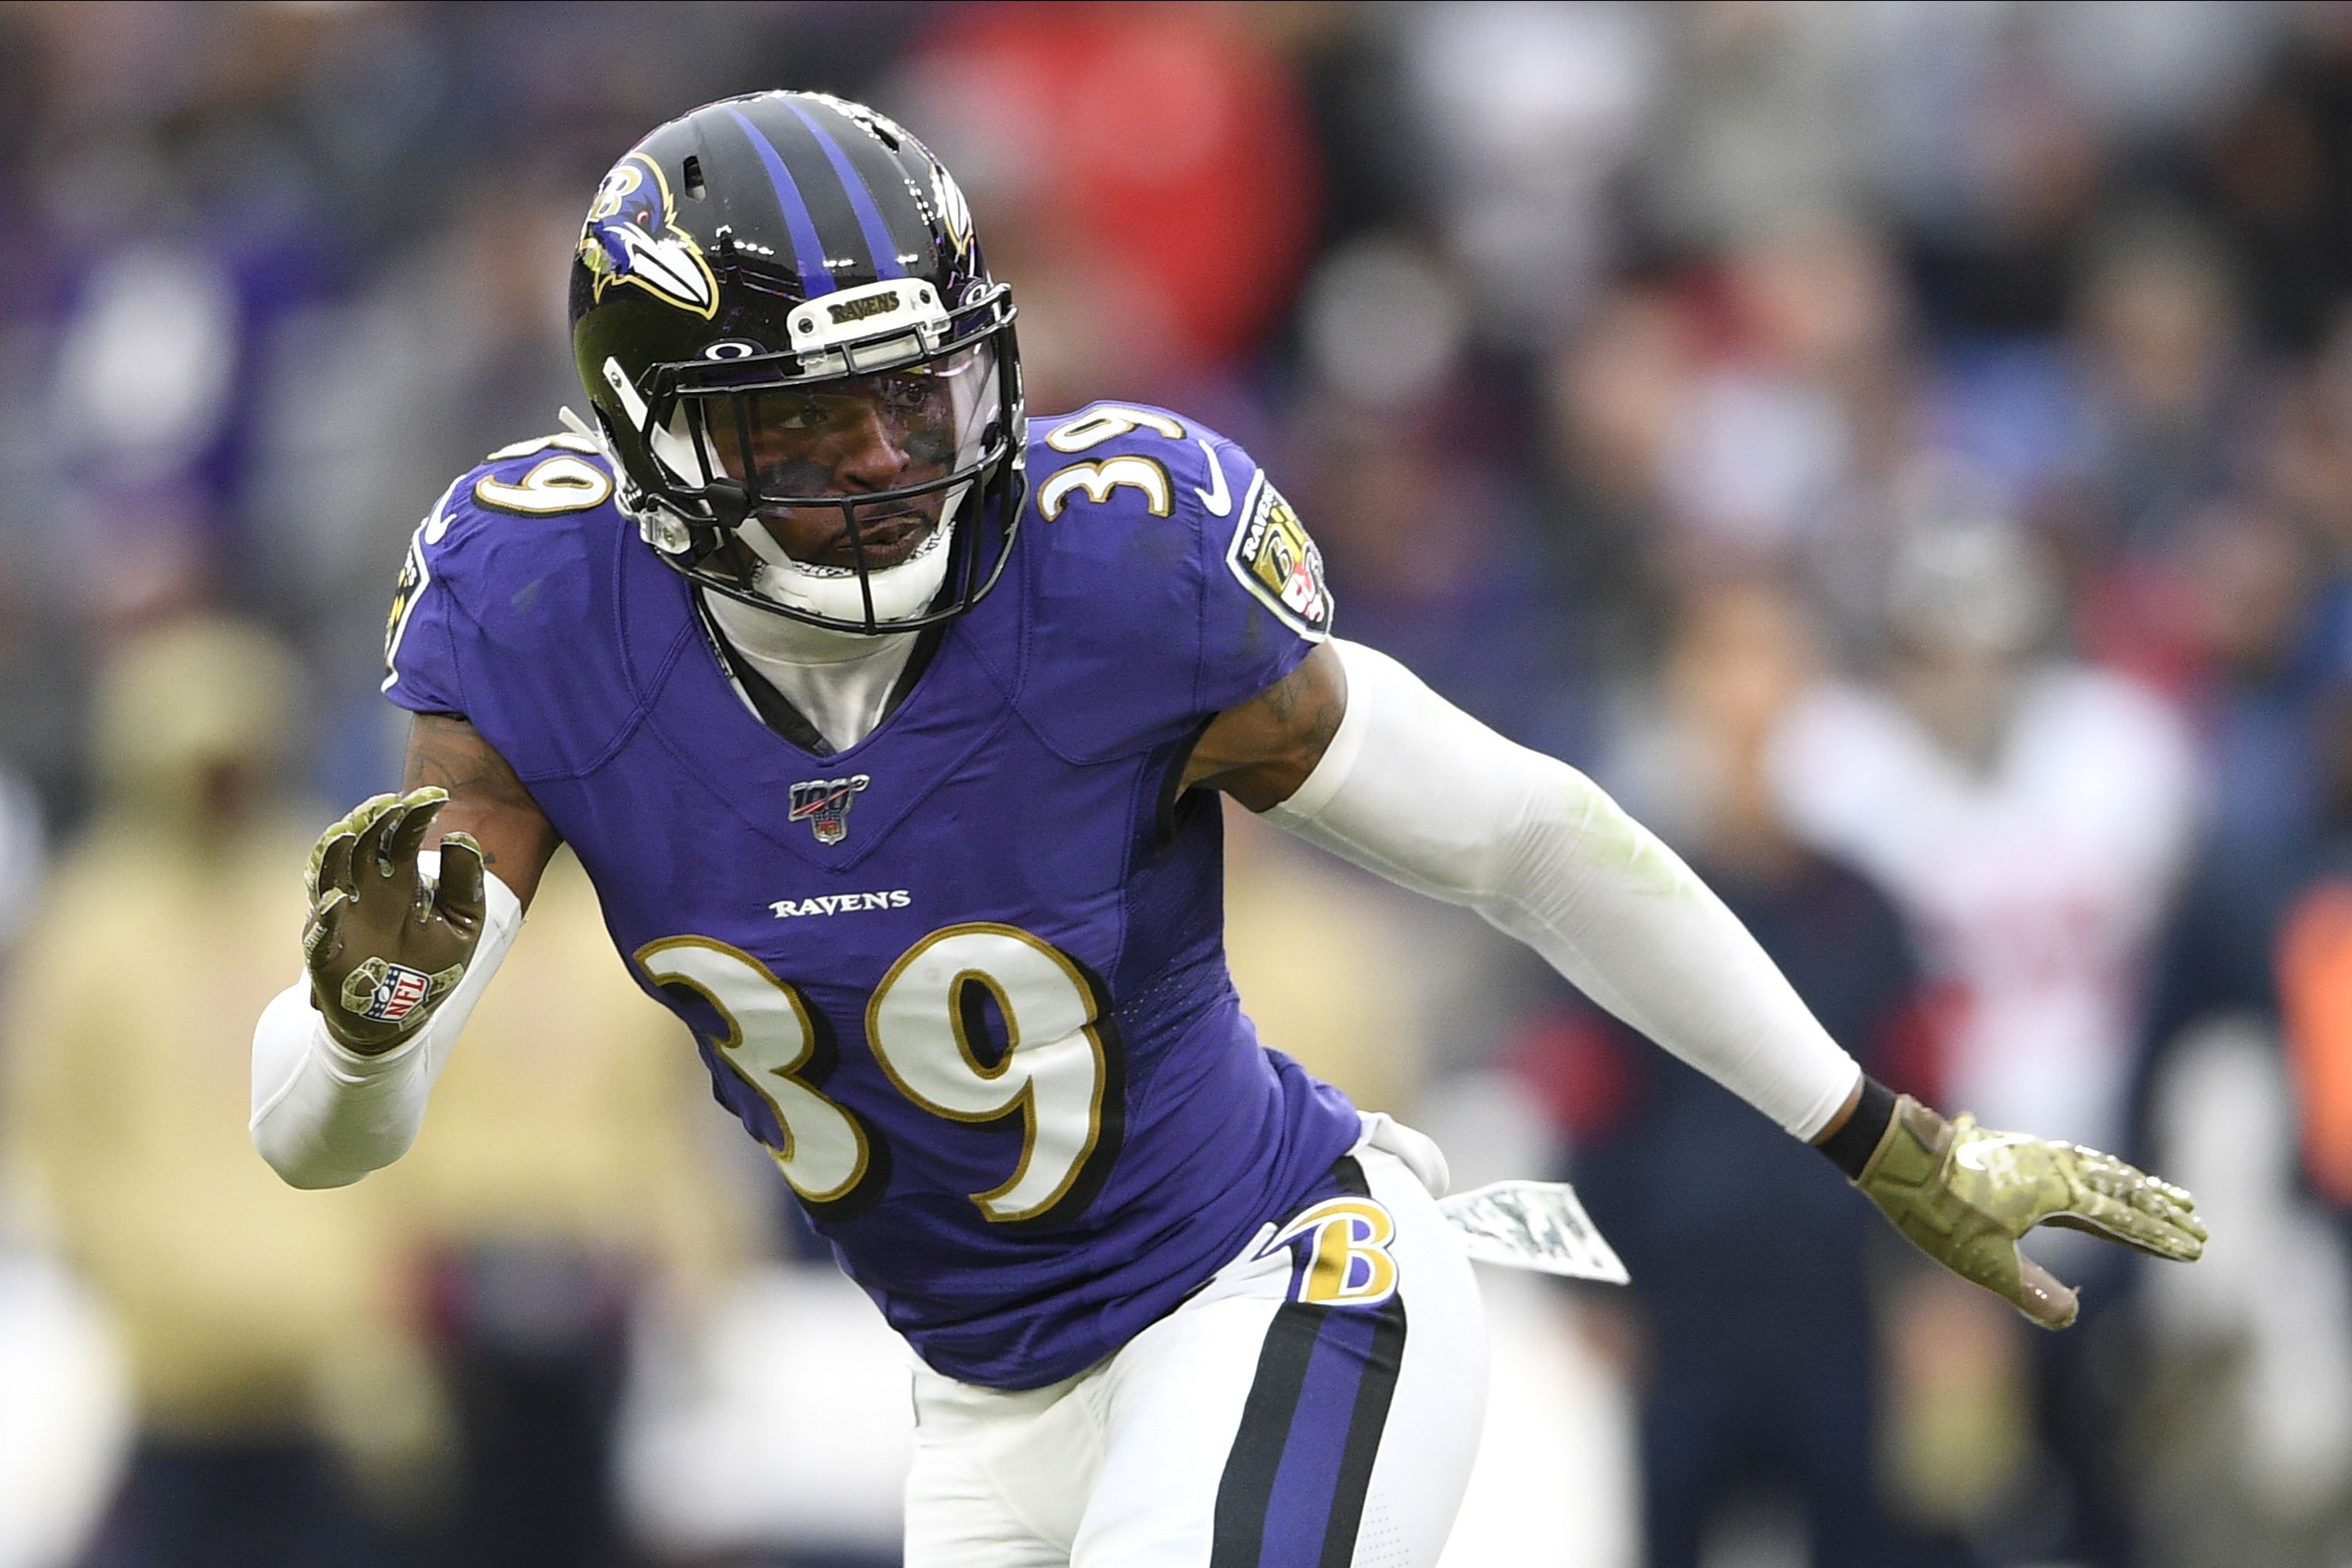 Former Baltimore Ravens defensive back Brandon Carr joins Cowboys